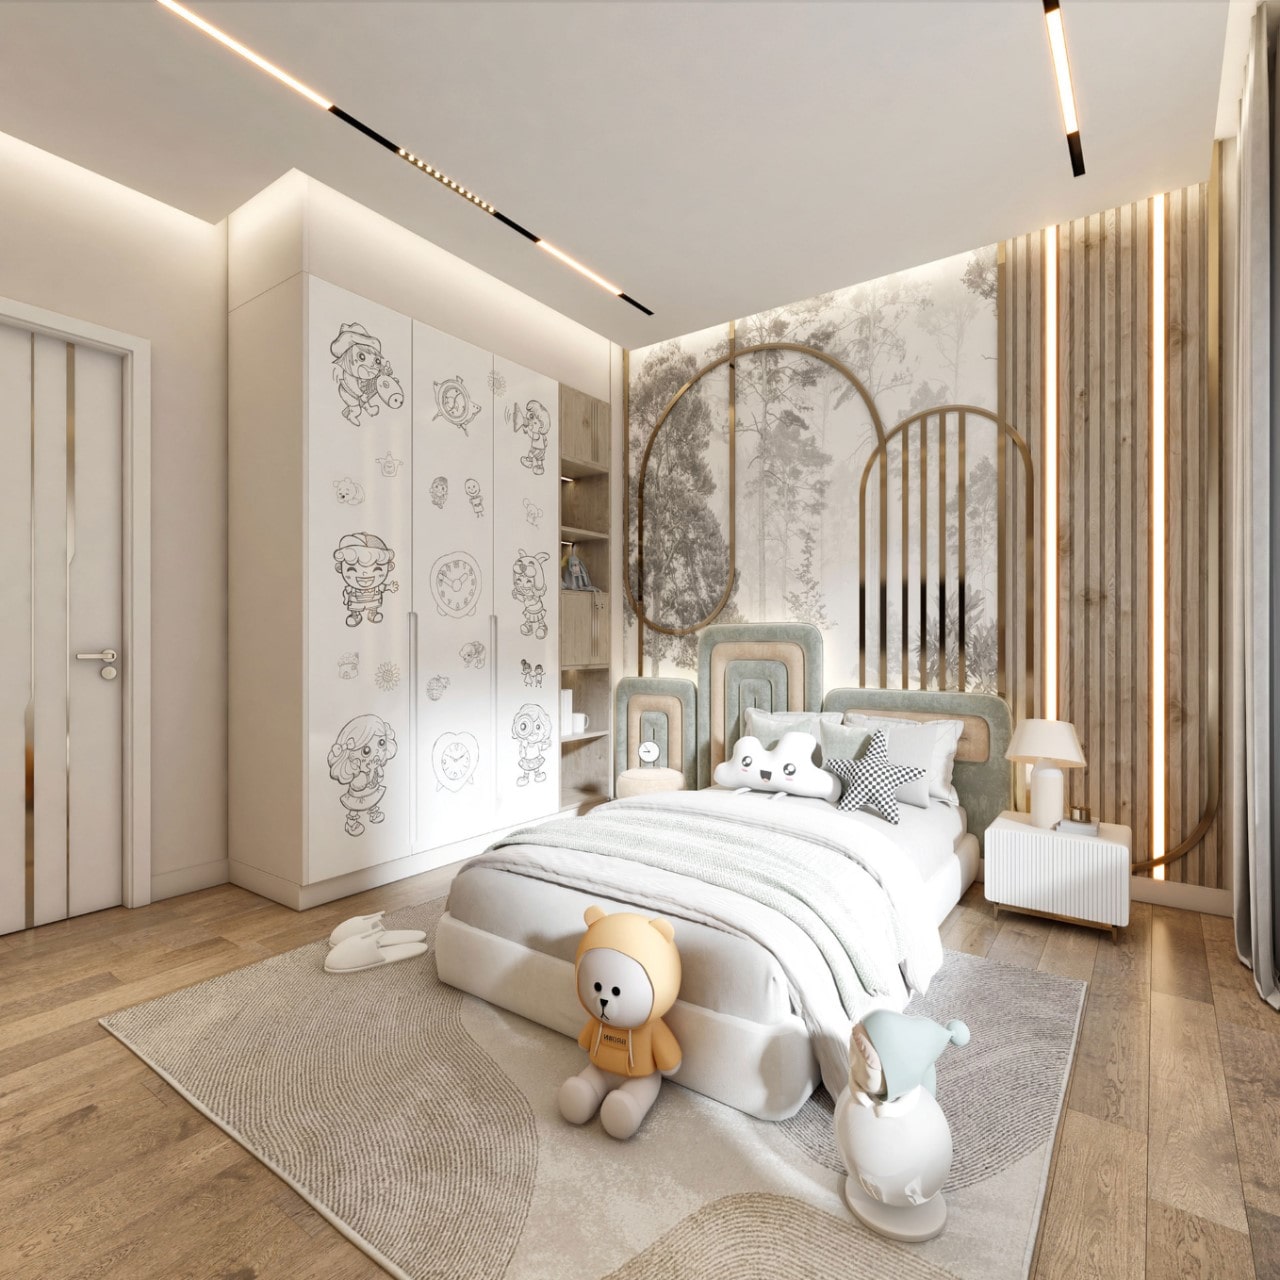 Phòng ngủ màu trắng kết hợp thêm các chất liệu như inox vàng lòng lánh giúp tăng sự sang trọng cho căn phòng